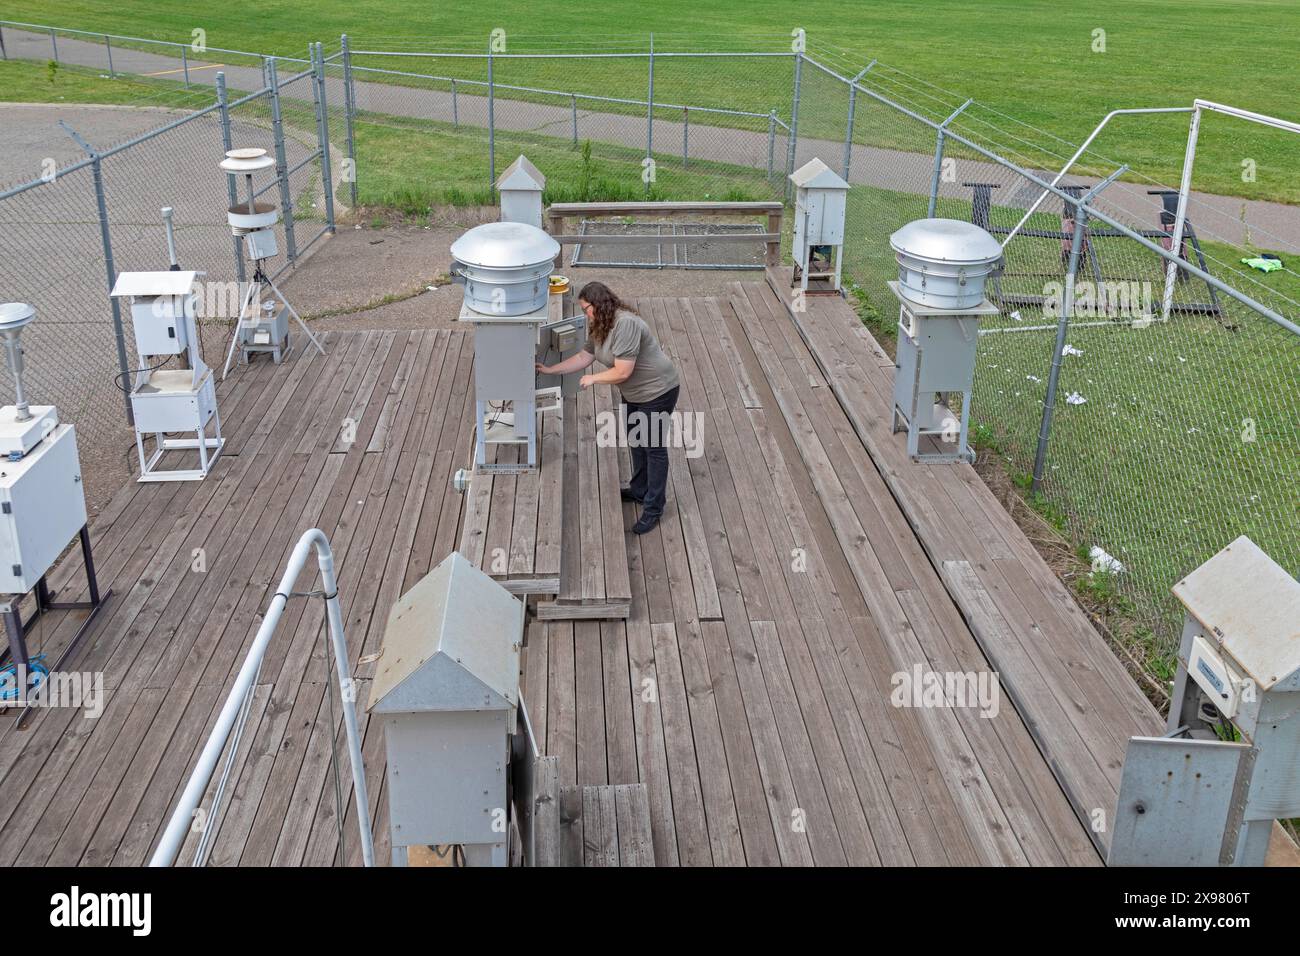 Dearborn, Michigan - Rebecca Robak, un tecnico ambientale, controlla gli strumenti per la qualità dell'aria in una stazione di monitoraggio gestita dal dipartimento del Michigan Foto Stock